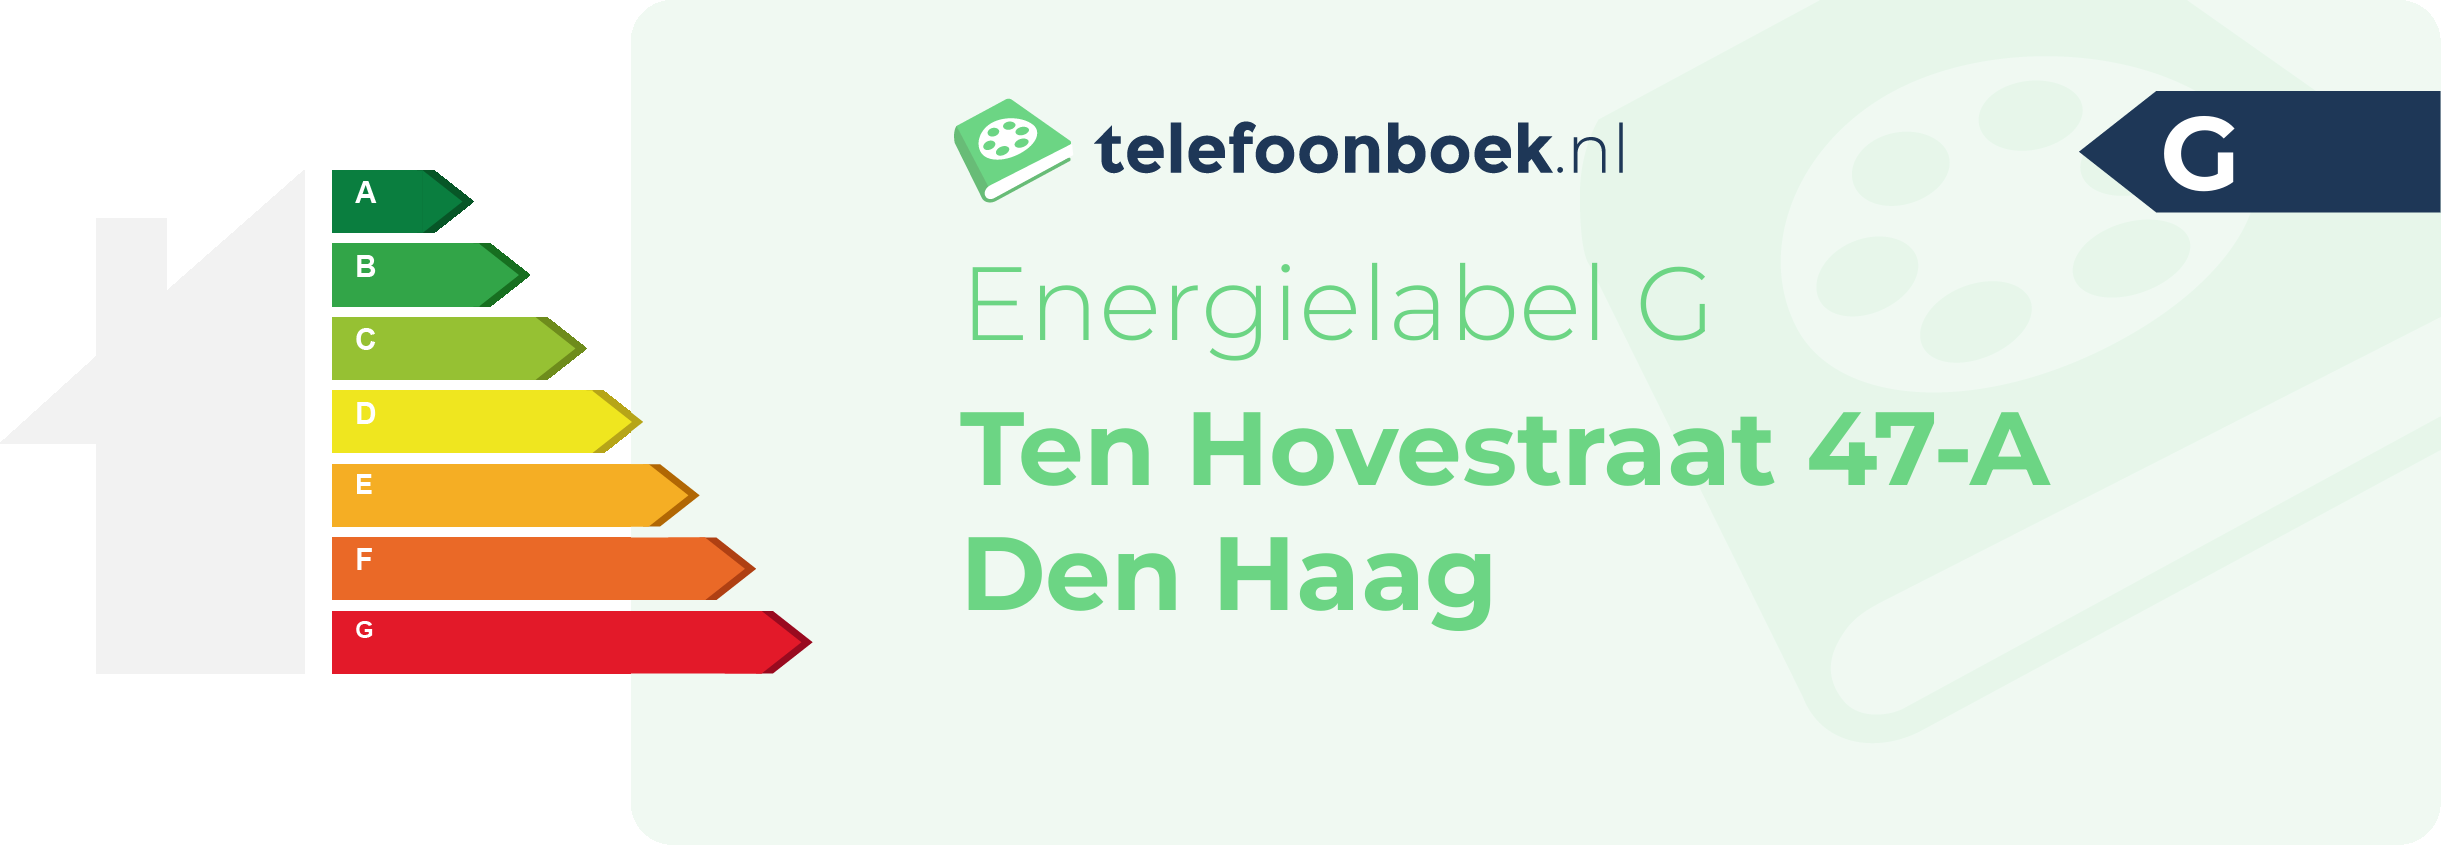 Energielabel Ten Hovestraat 47-A Den Haag